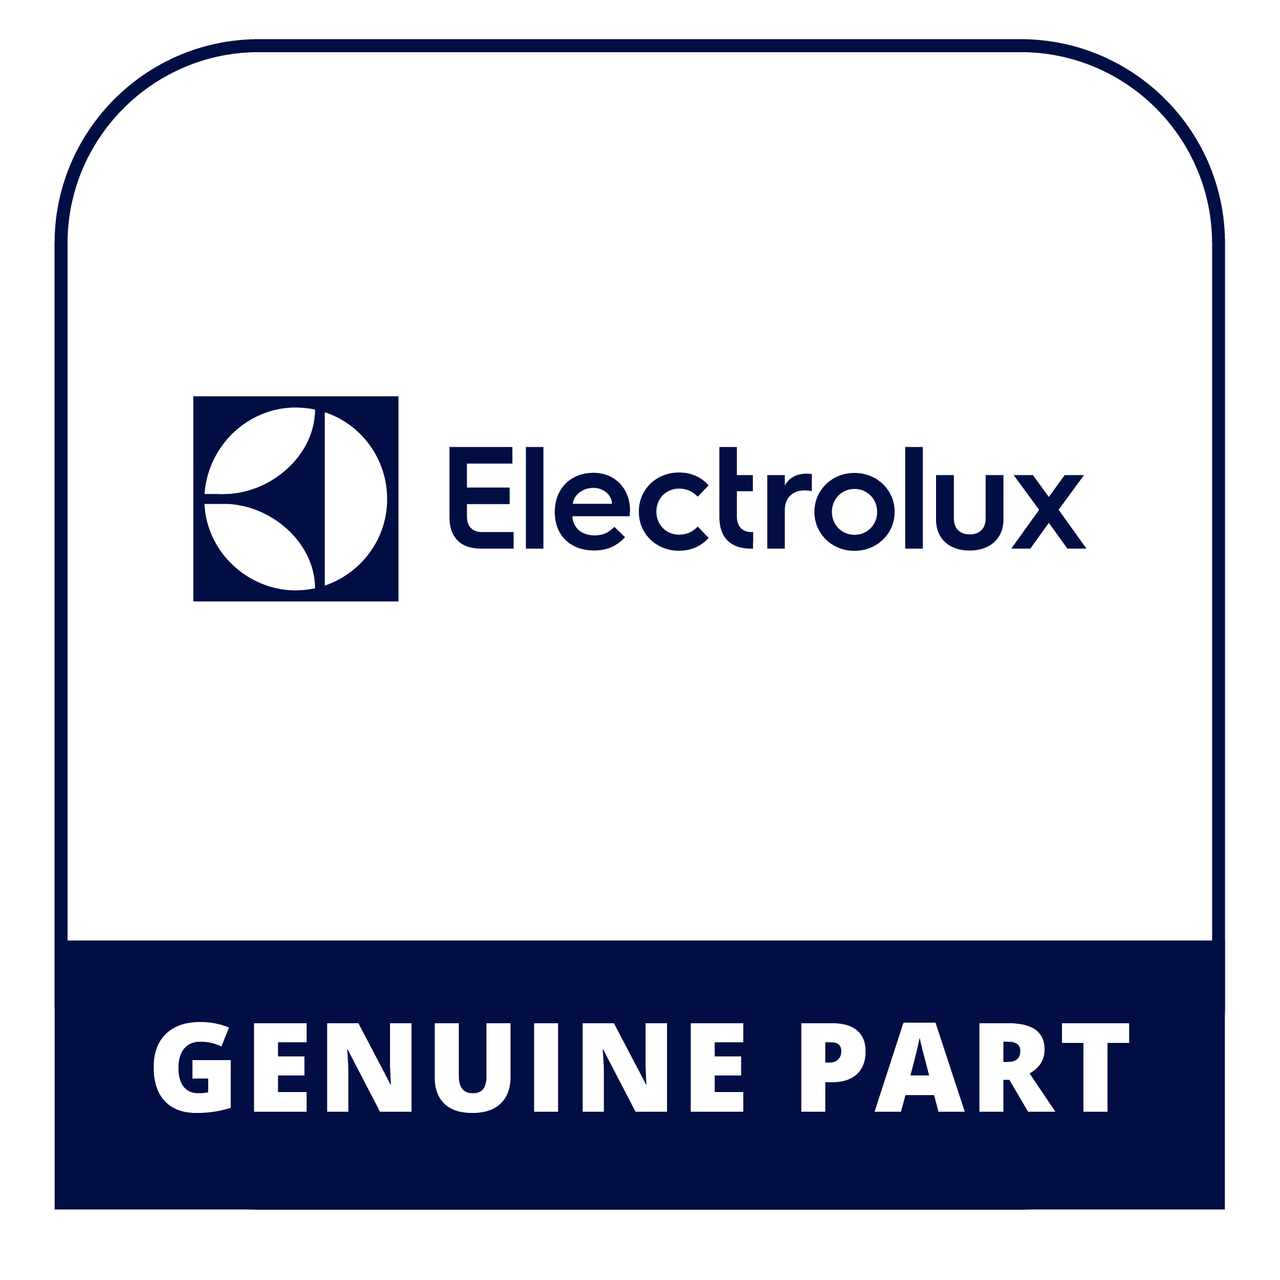 Frigidaire - Electrolux 5303309907 Clip - Genuine Electrolux Part